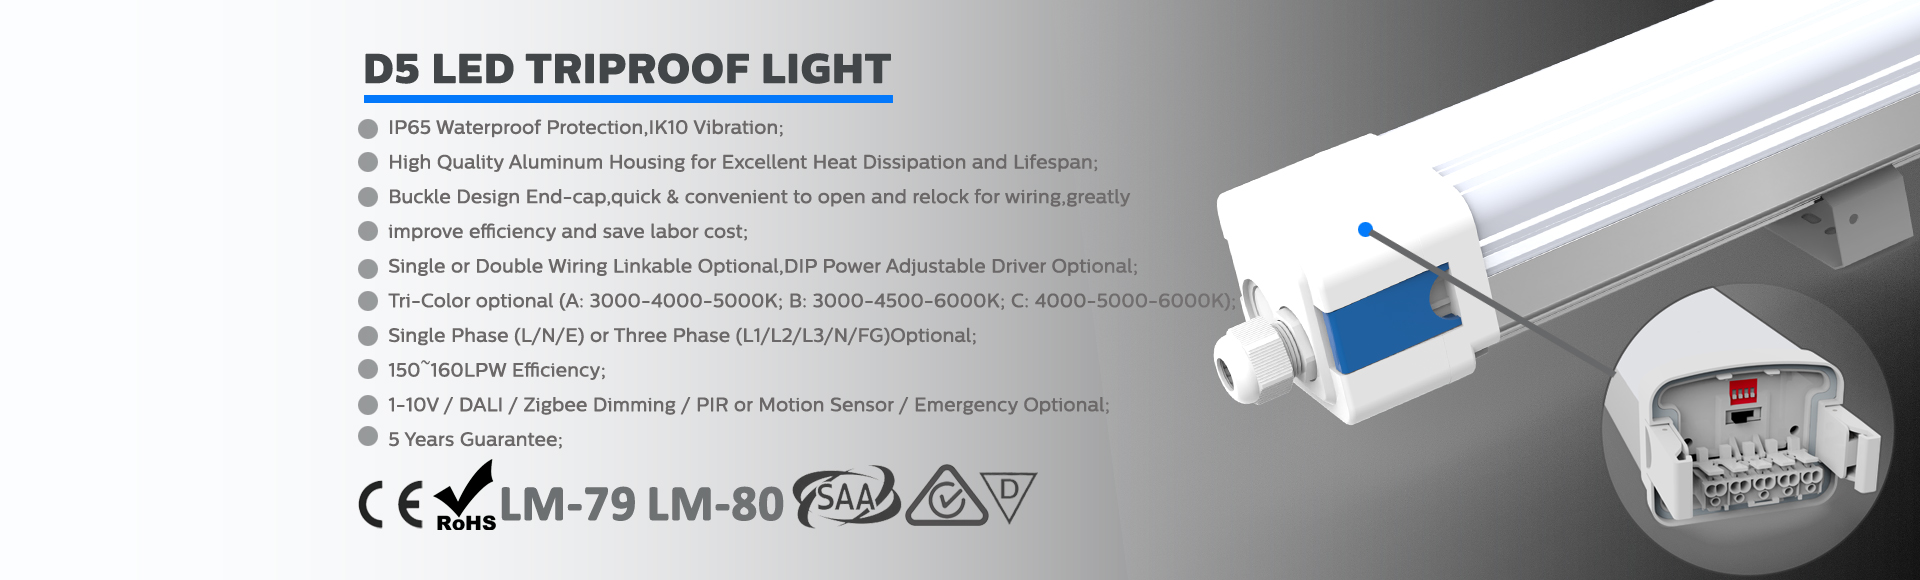 D5 LED Triproof Light